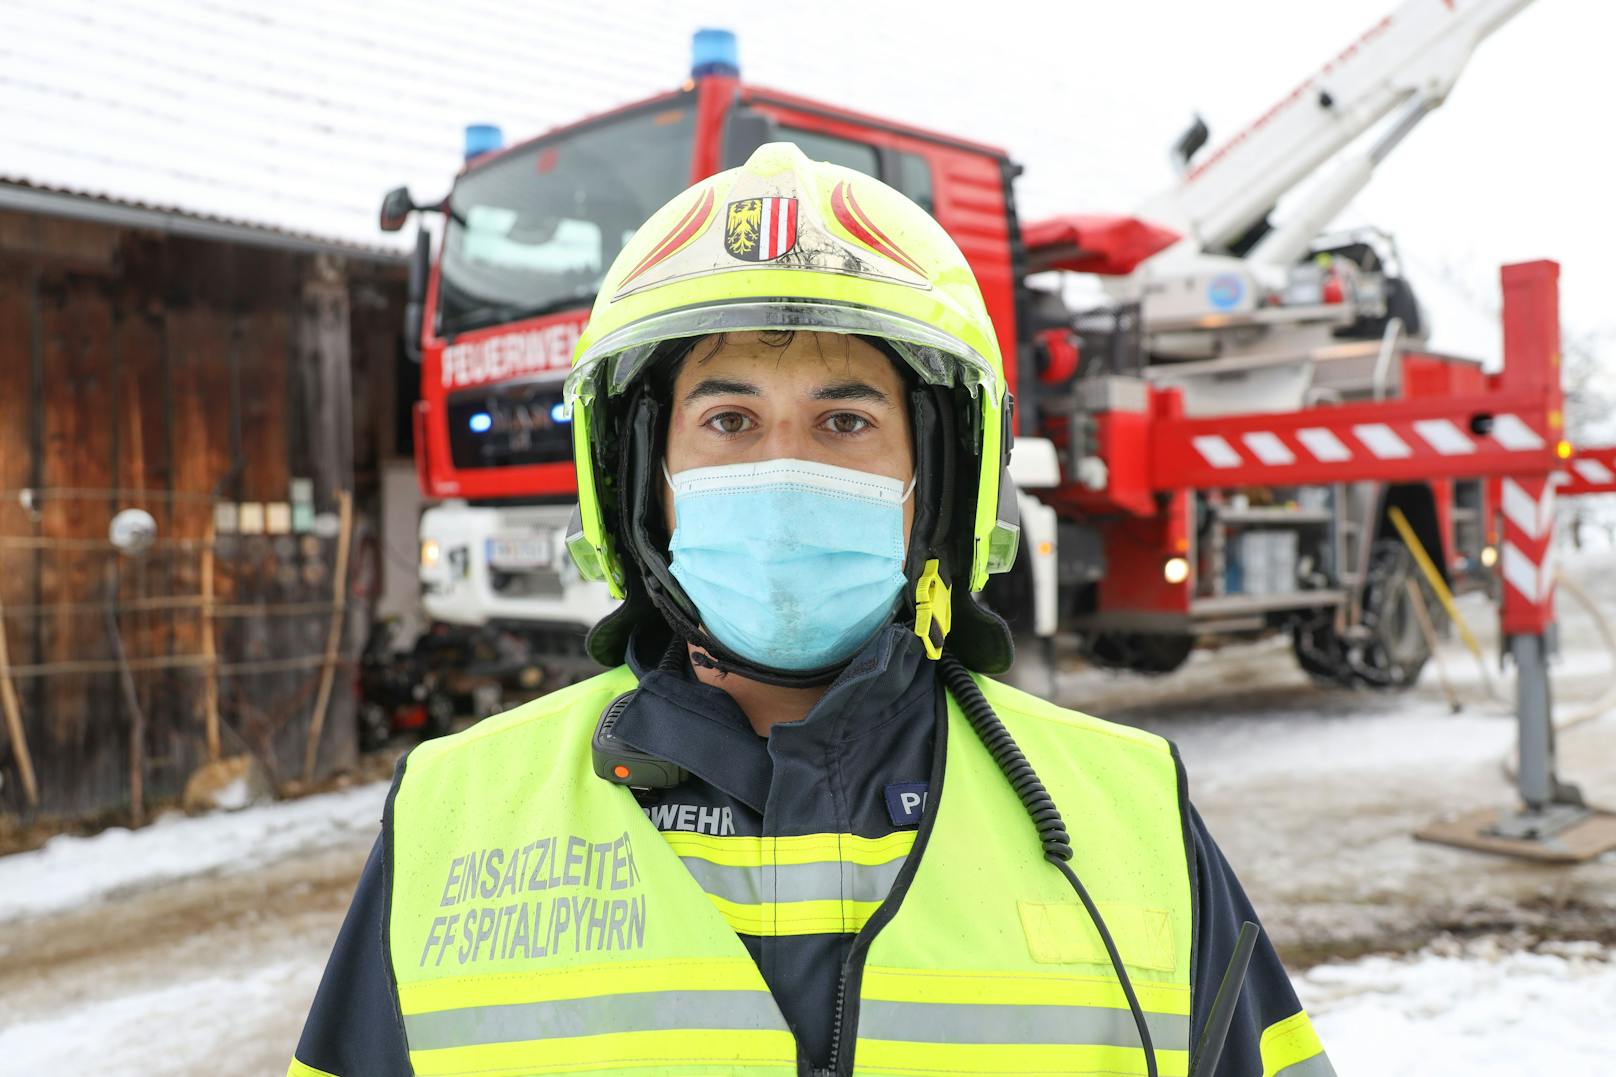 Stefan Patzl, Einsatzleiter der Feuerwehr Spital am Pyhrn, schildert die Zustände vor Ort.